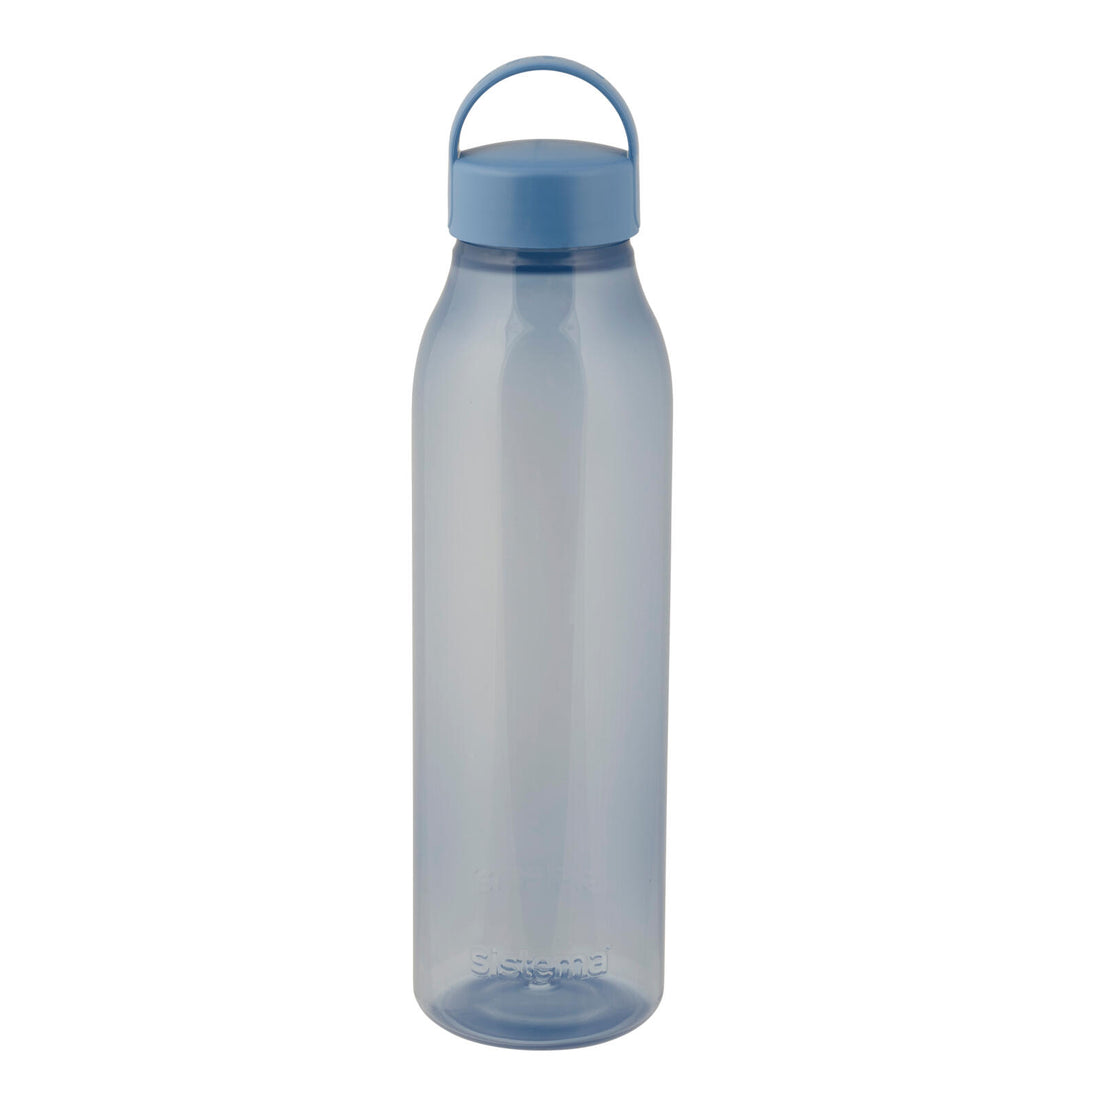 OCEAN BOUND Water bottle, dark blue